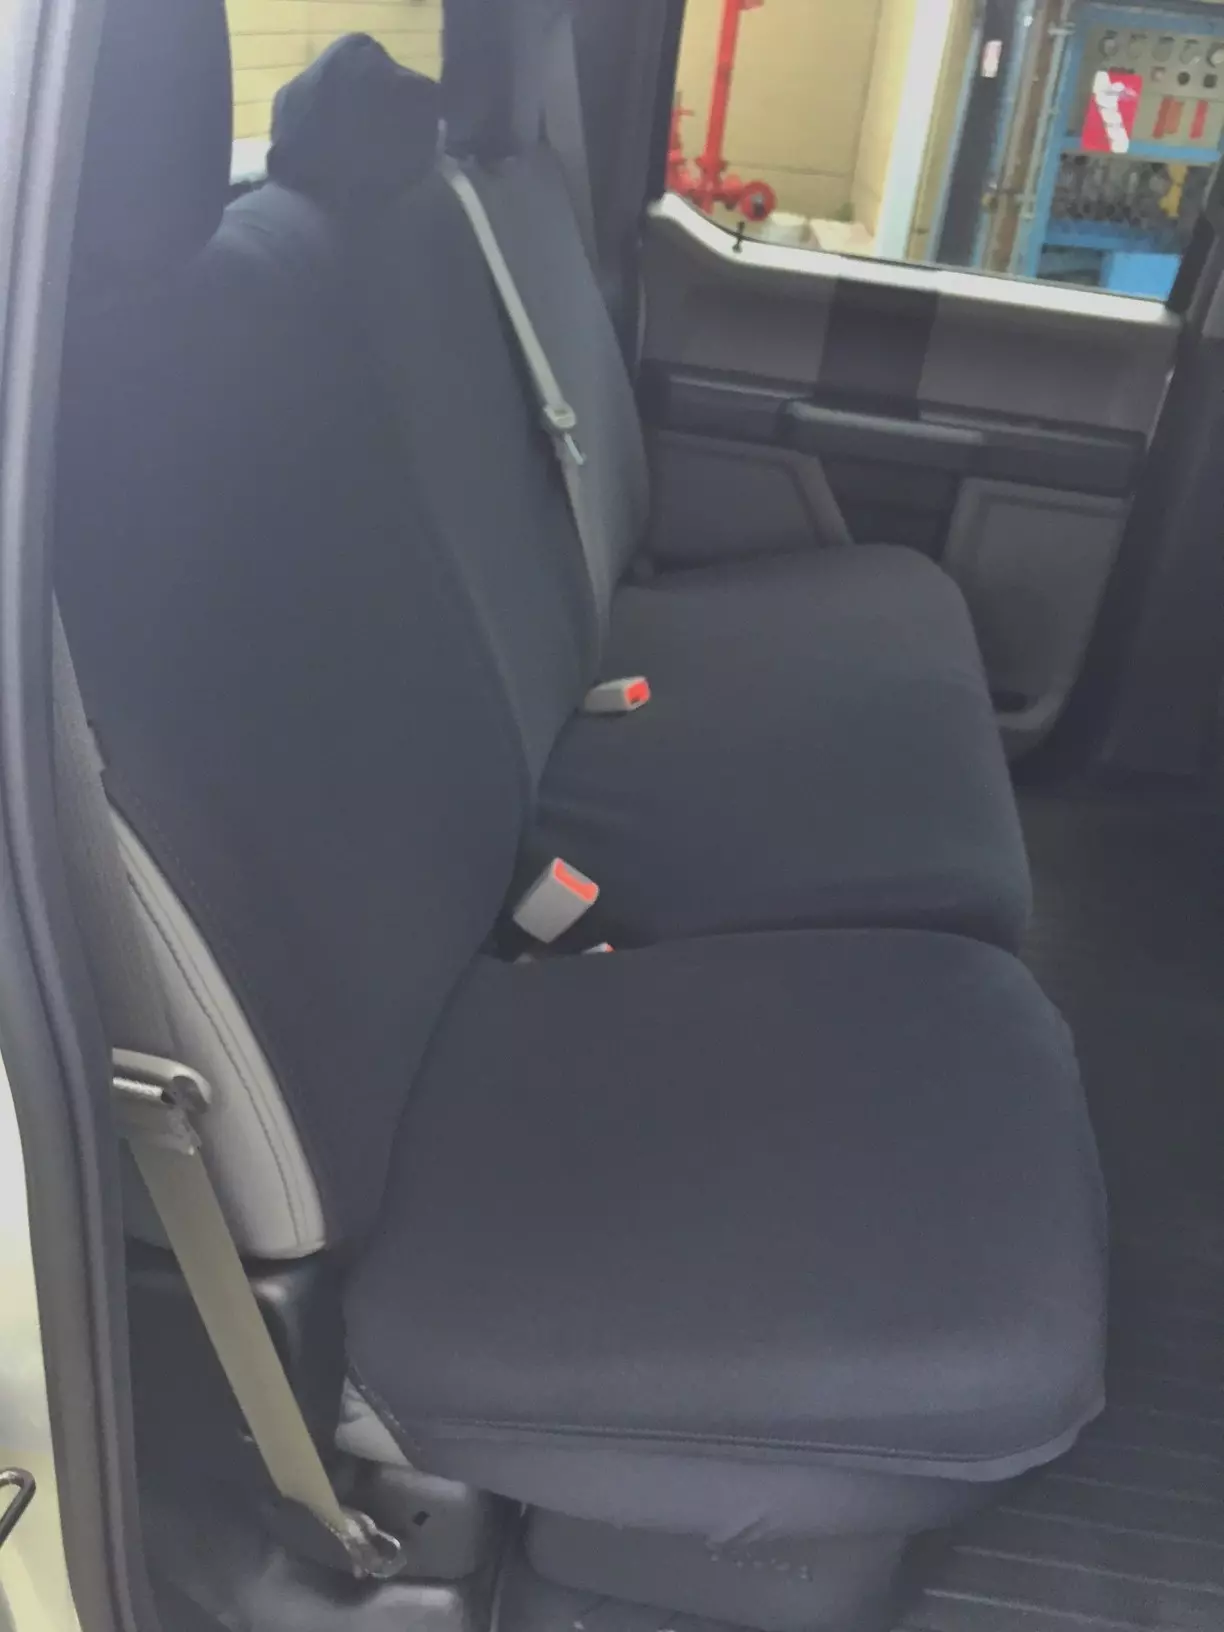 Full seat covers Split Bench - Neoprene Material